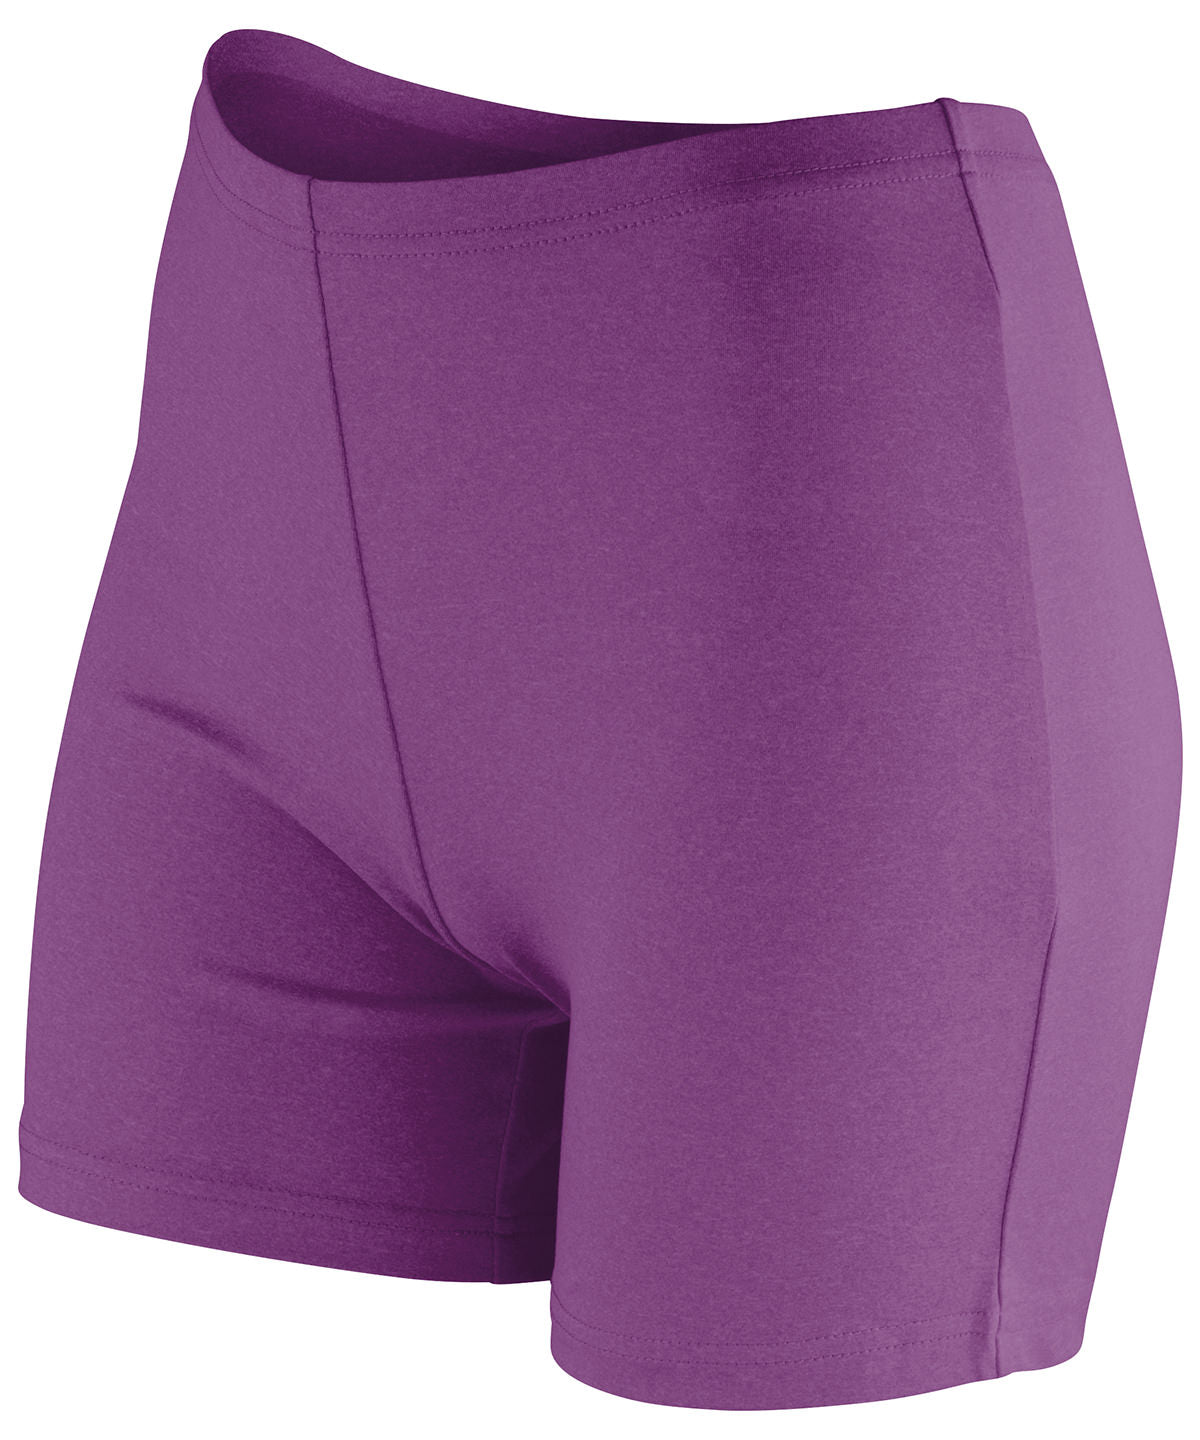 Stuttbuxur - Softex® Shorts